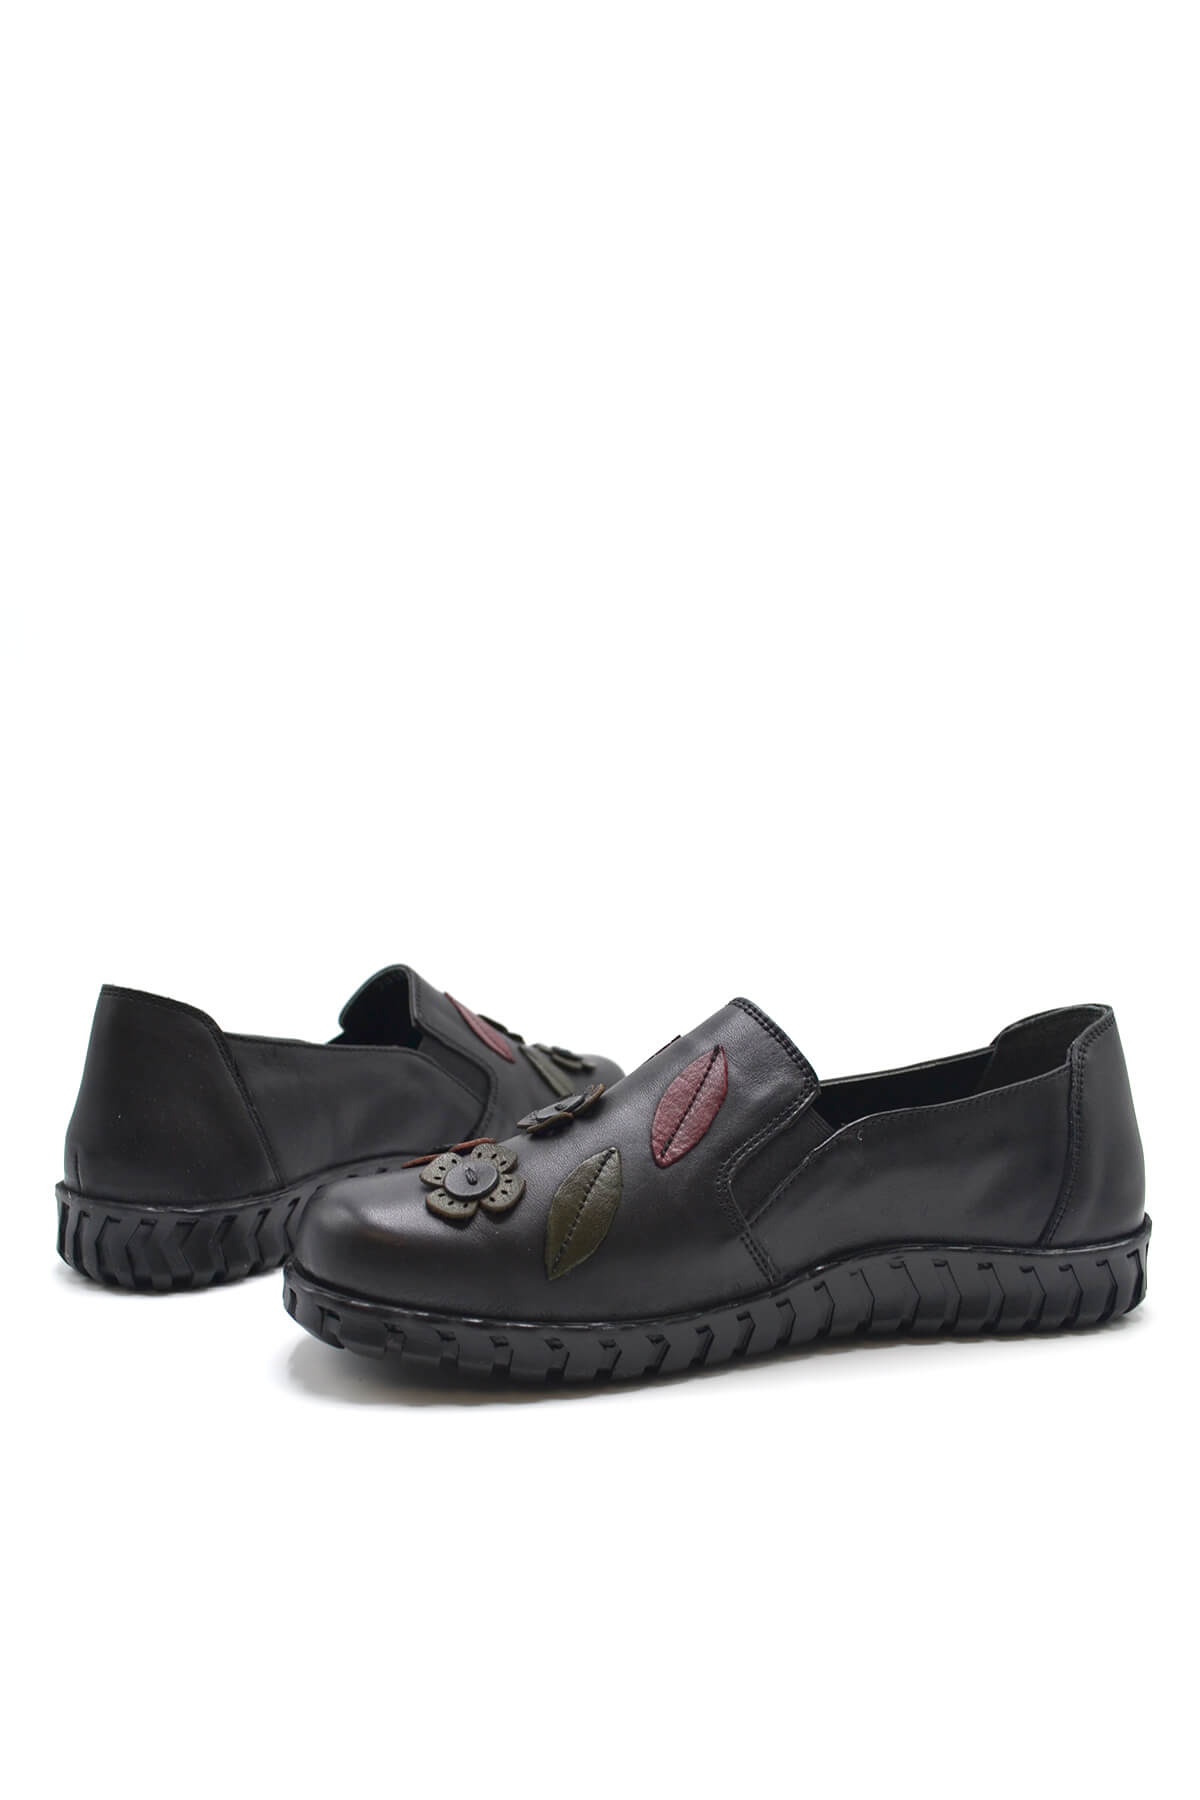 Kadın Comfort Deri Ayakkabı Siyah 2050862K - Thumbnail